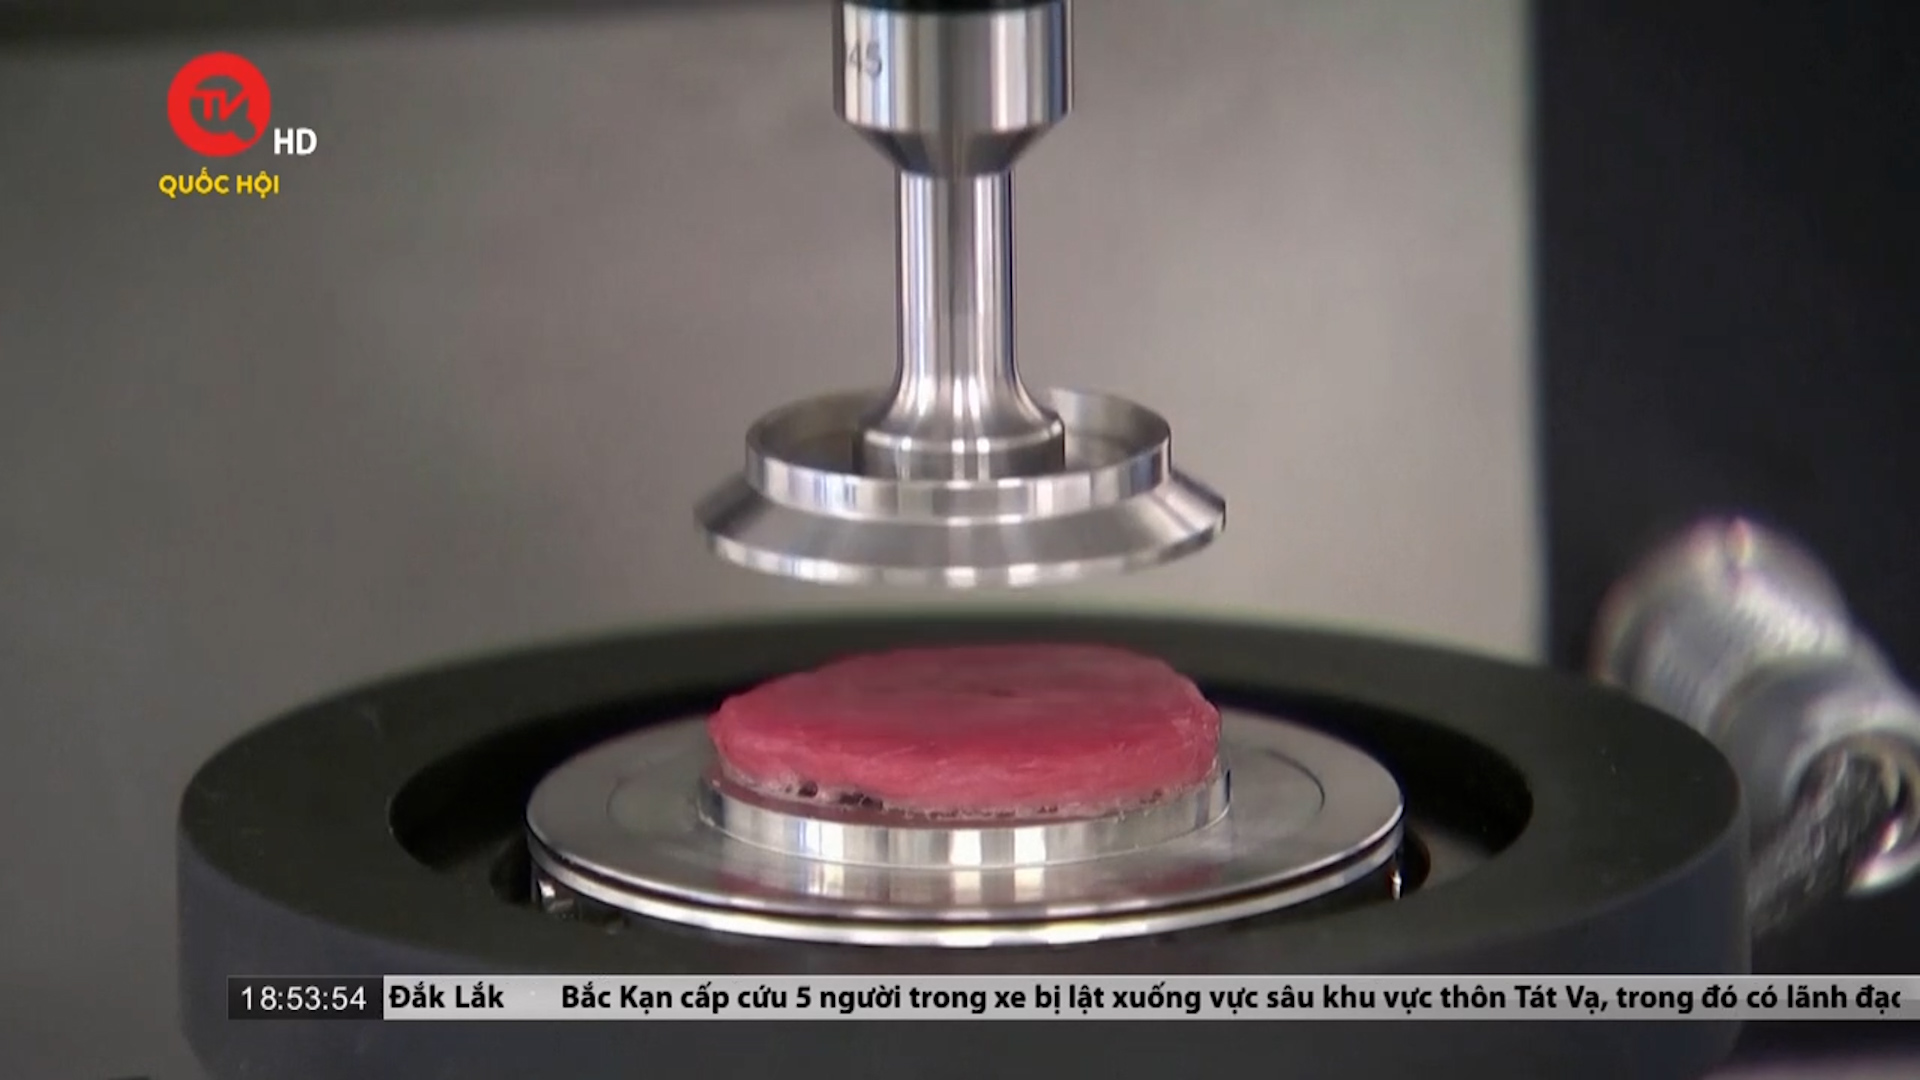 Ra mắt "New Meat" - thịt được sản xuất từ máy in 3D